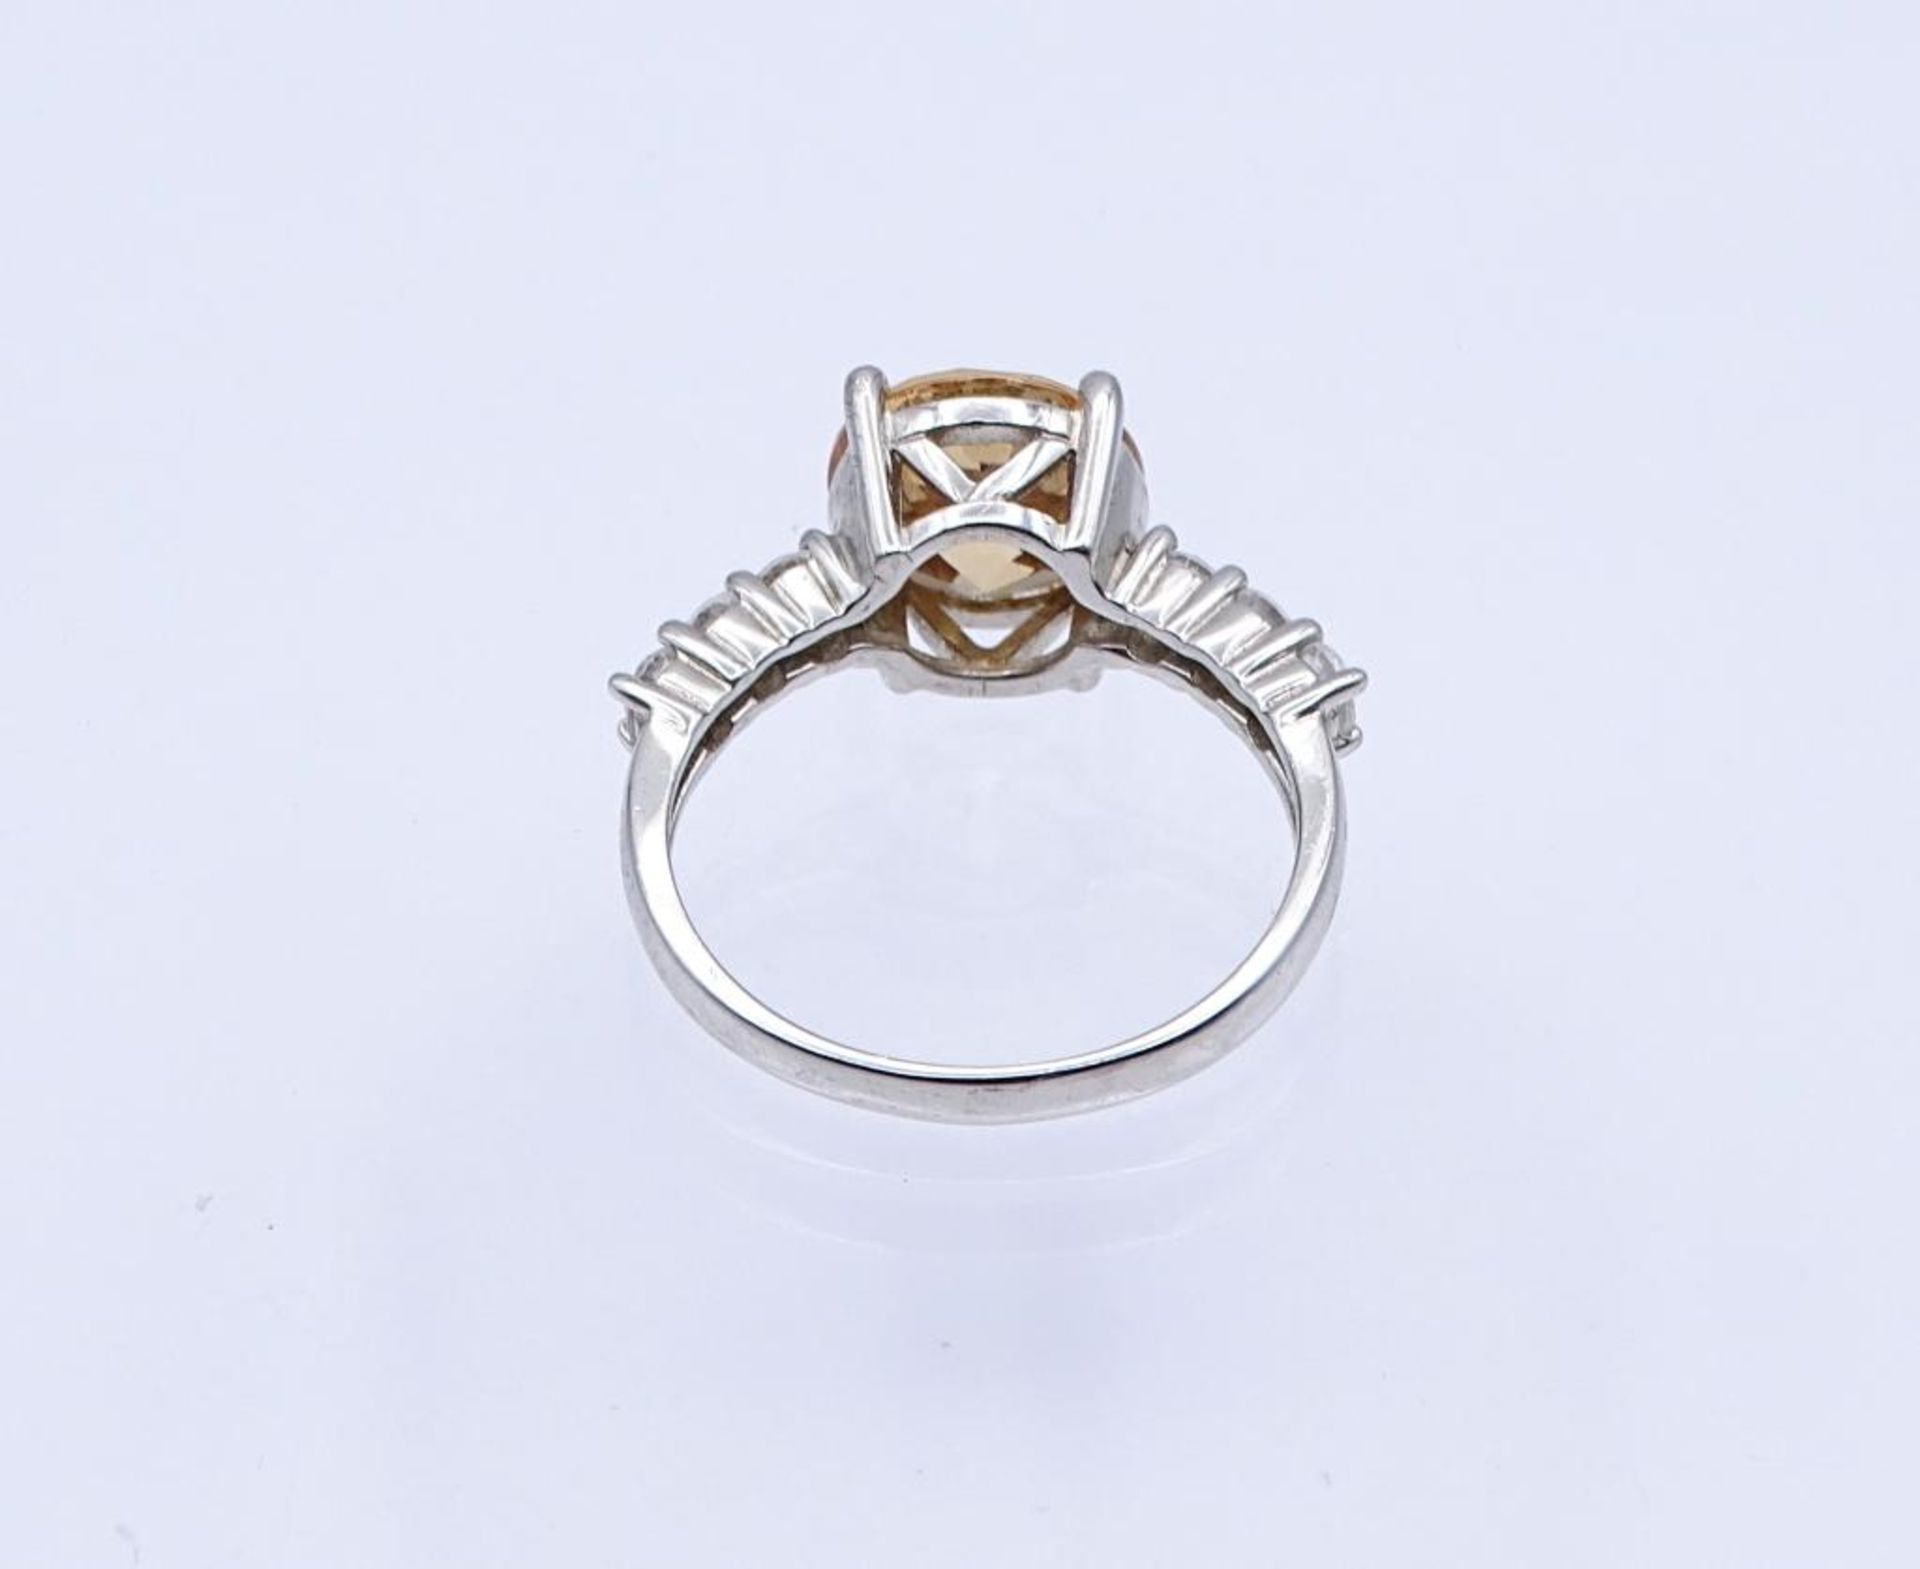 Silber Ring mit Zirkonia, Silber 925/000, 4,8gr. RG 60- - -22.61 % buyer's premium on the hammer - Bild 3 aus 3